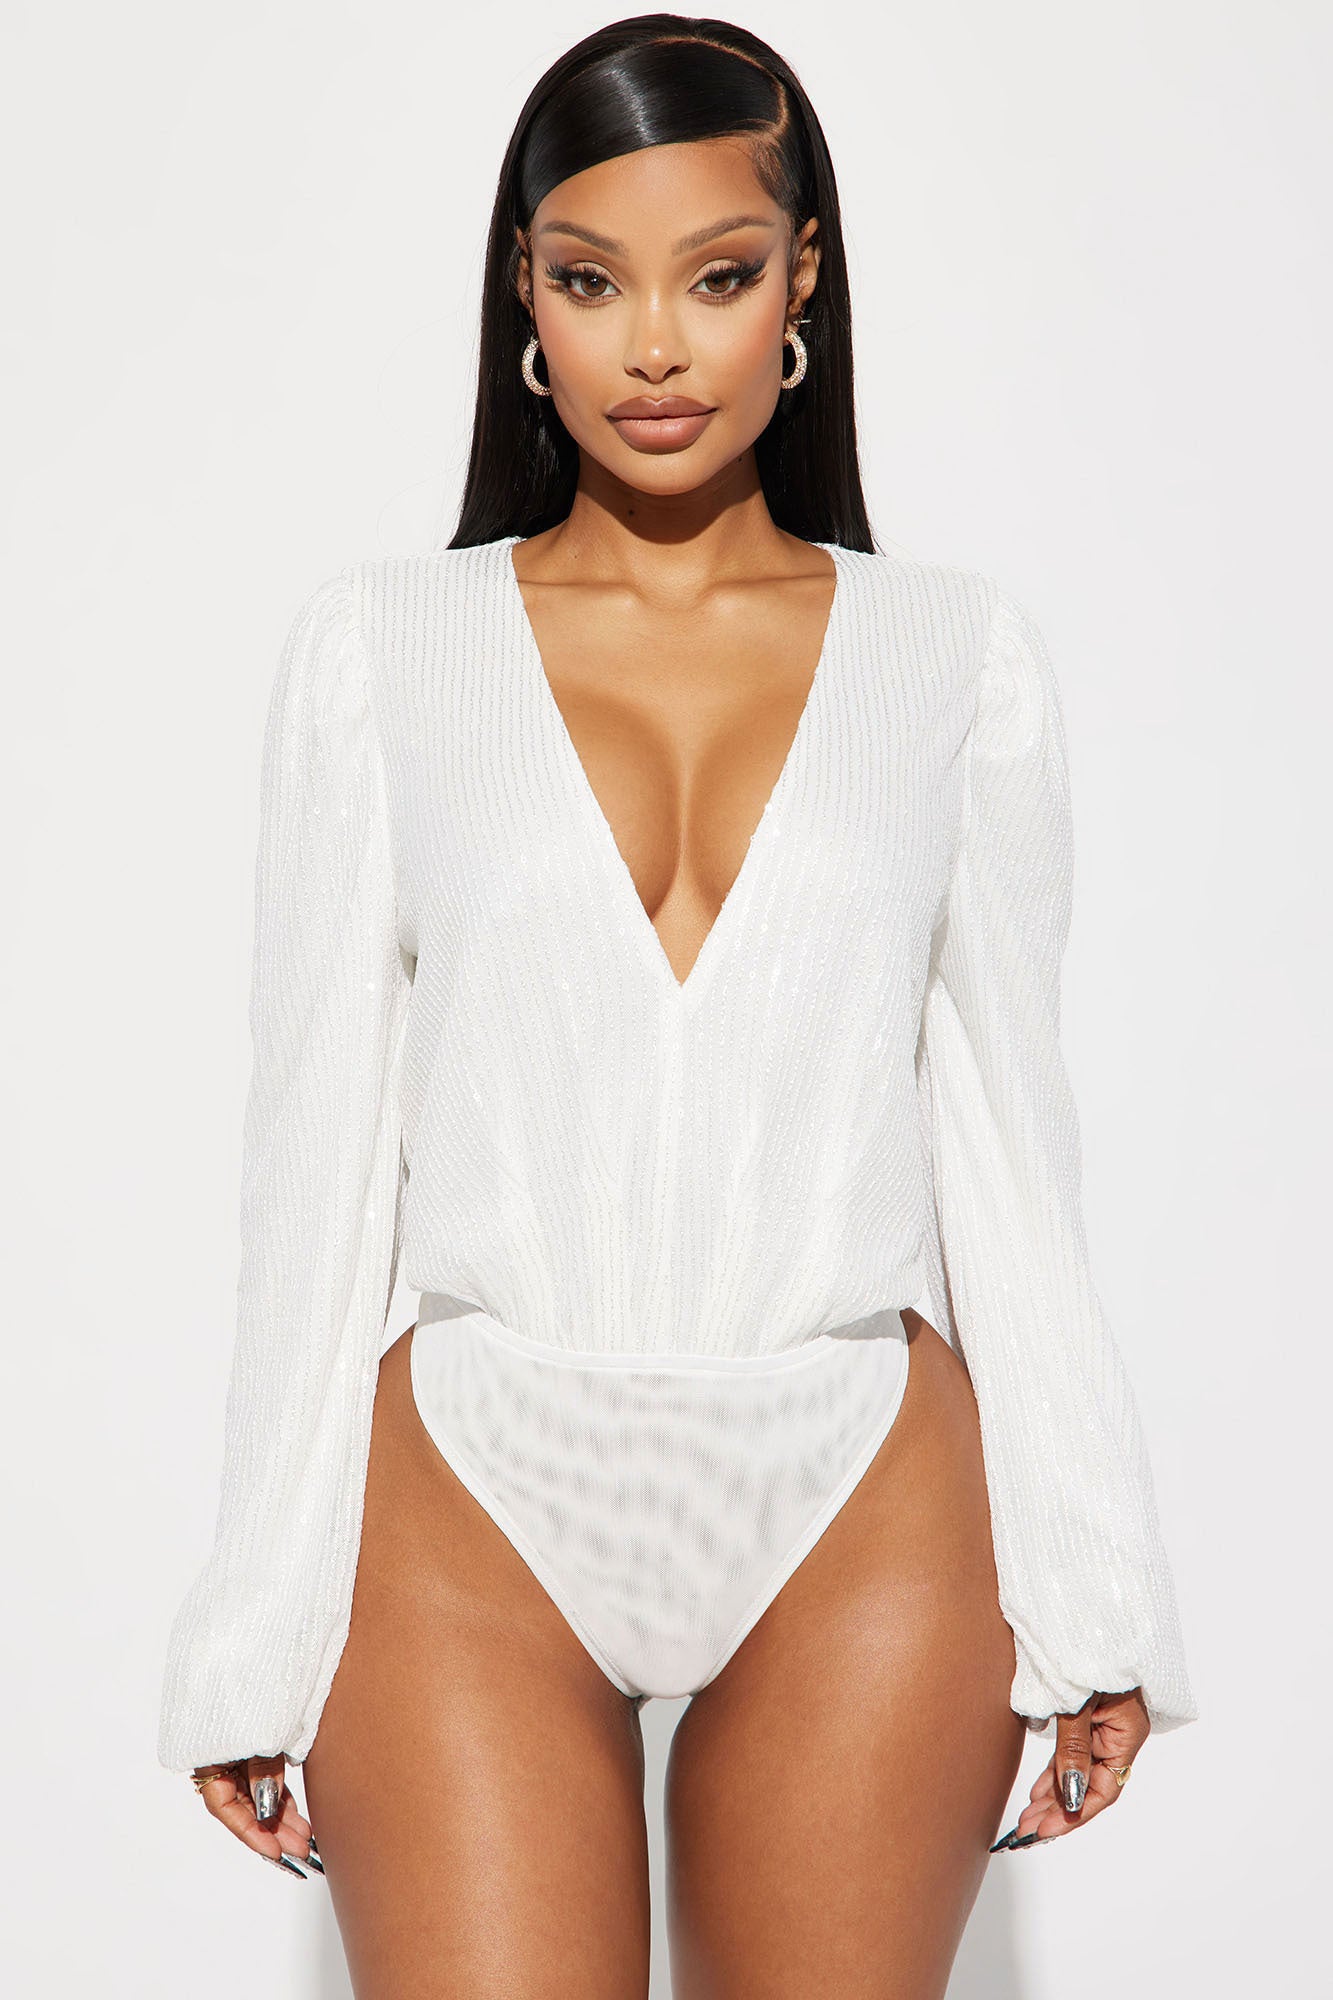 All That Glitters Sequin Bodysuit - White, Fashion Nova, Bodysuits